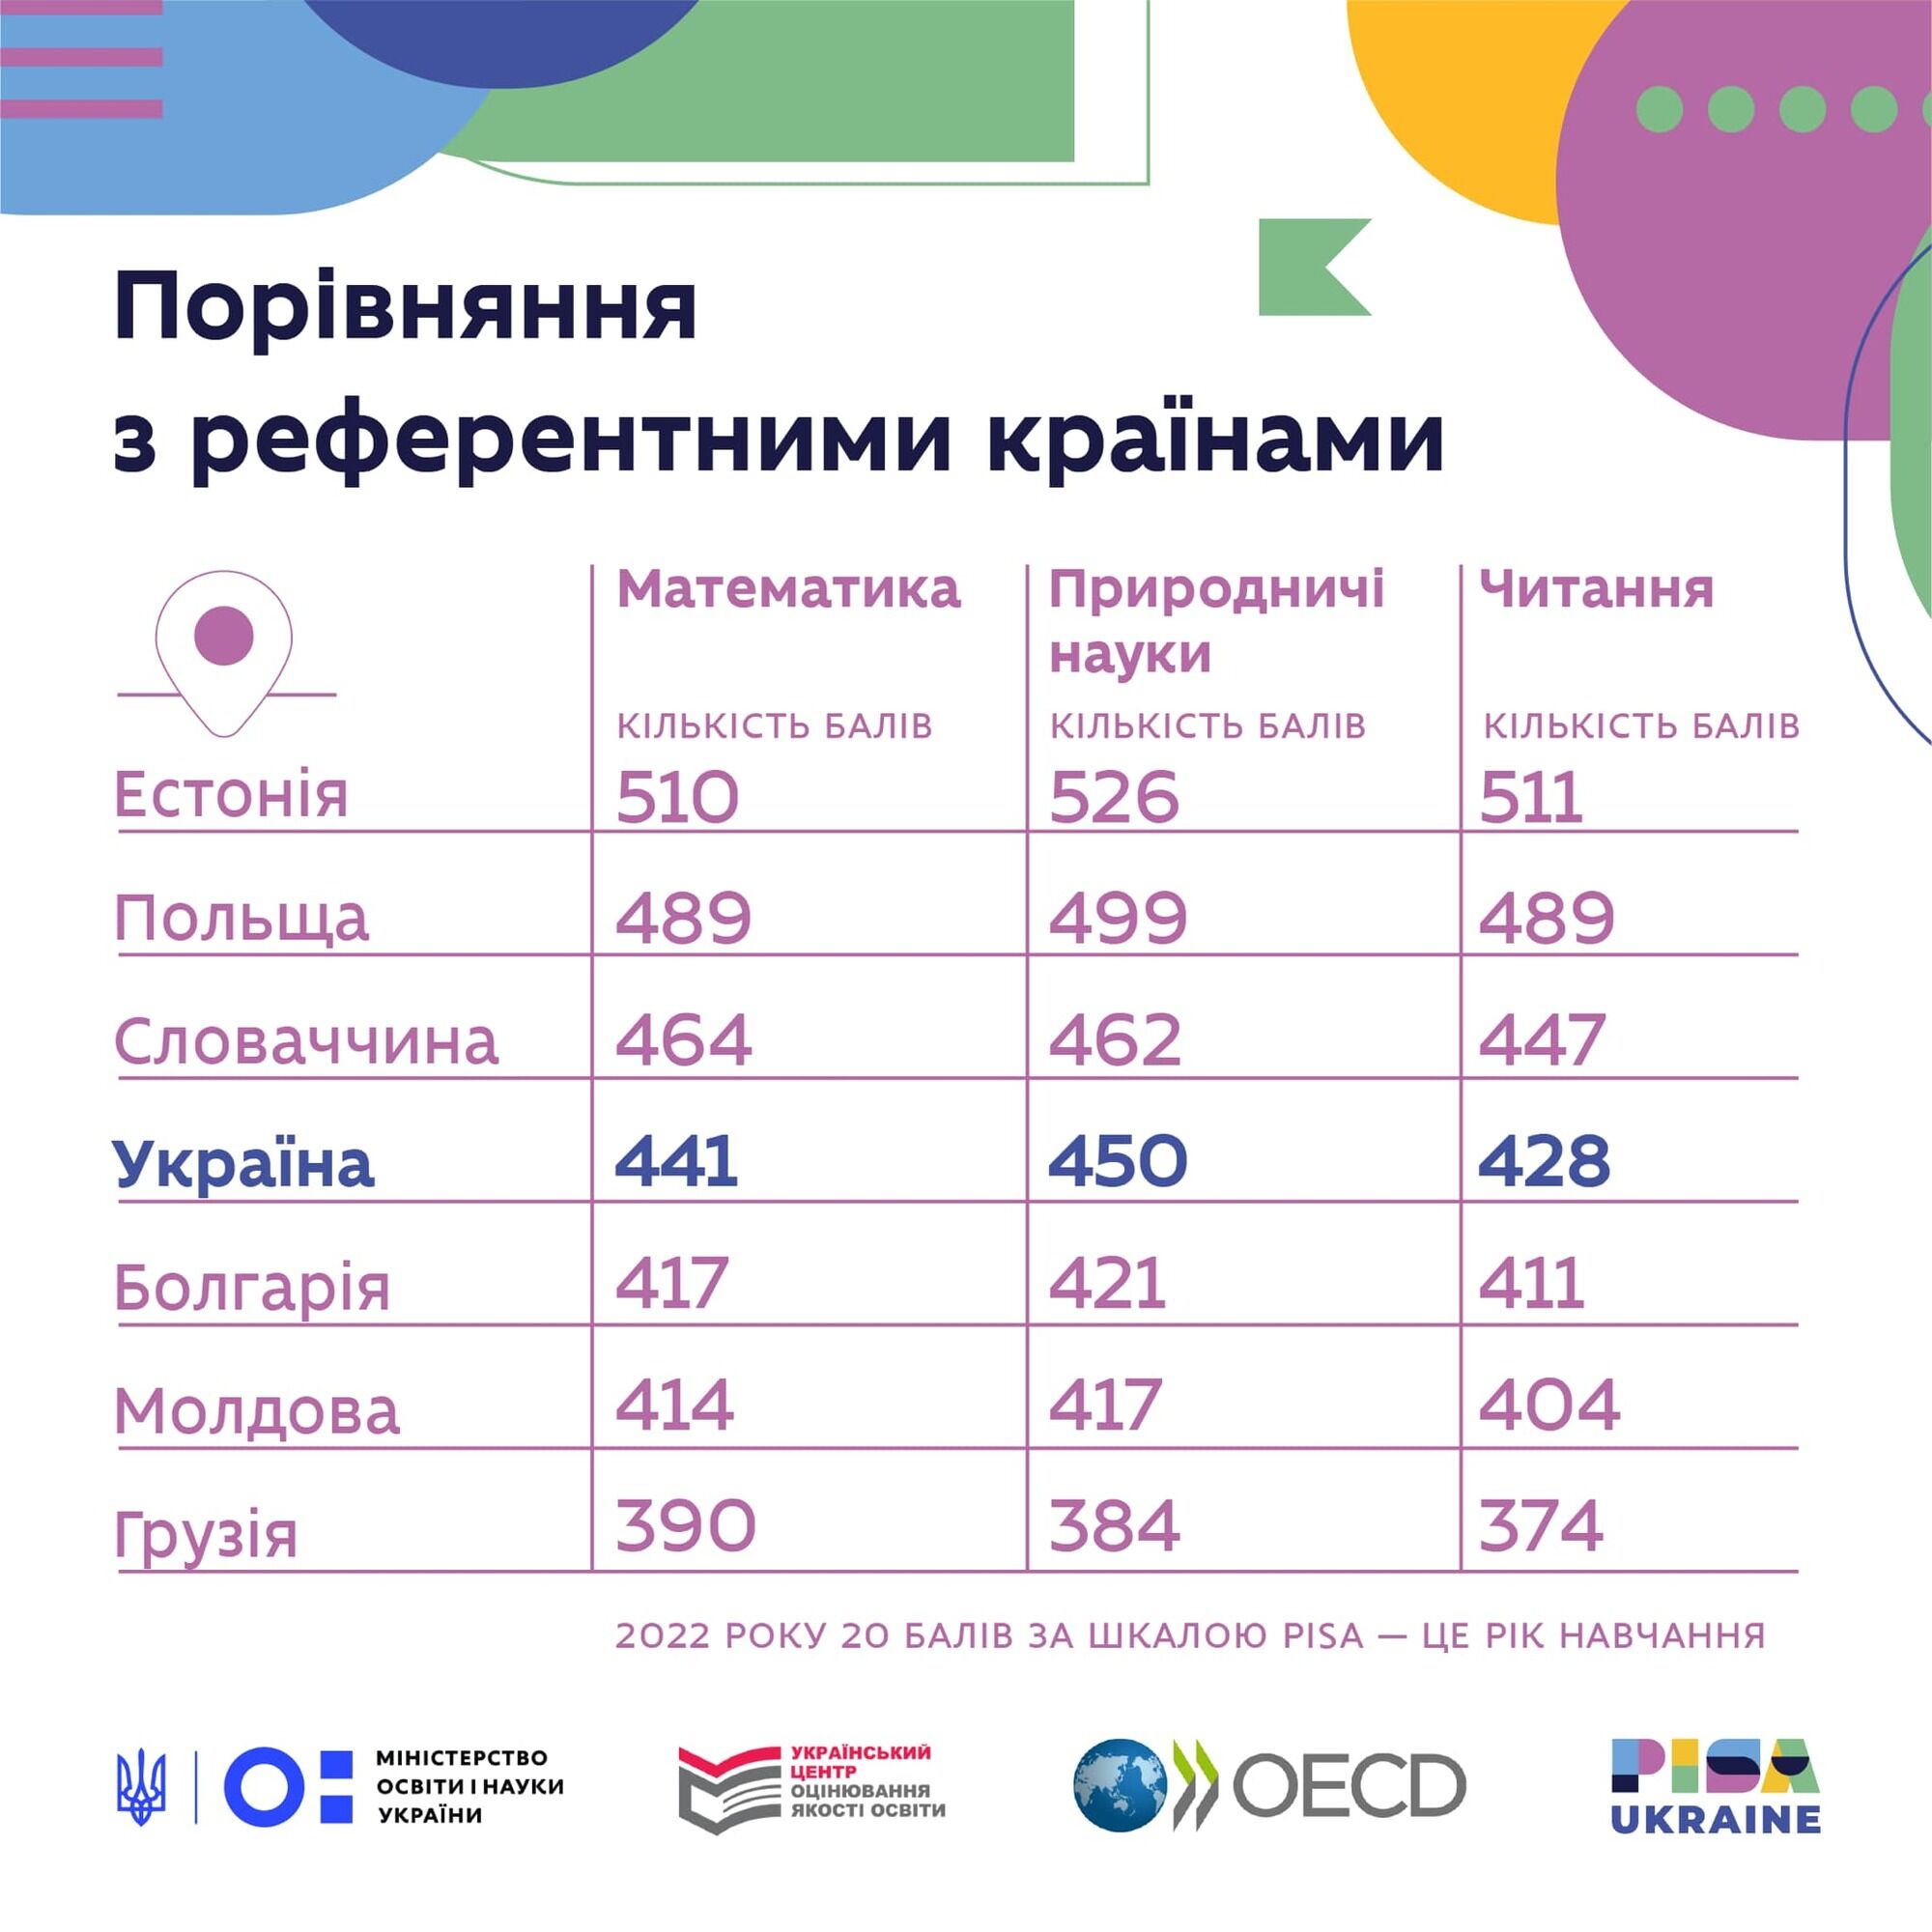 Украинские школьники отстают в знаниях от сверстников в Европе на несколько лет: какие предметы ''провисают''